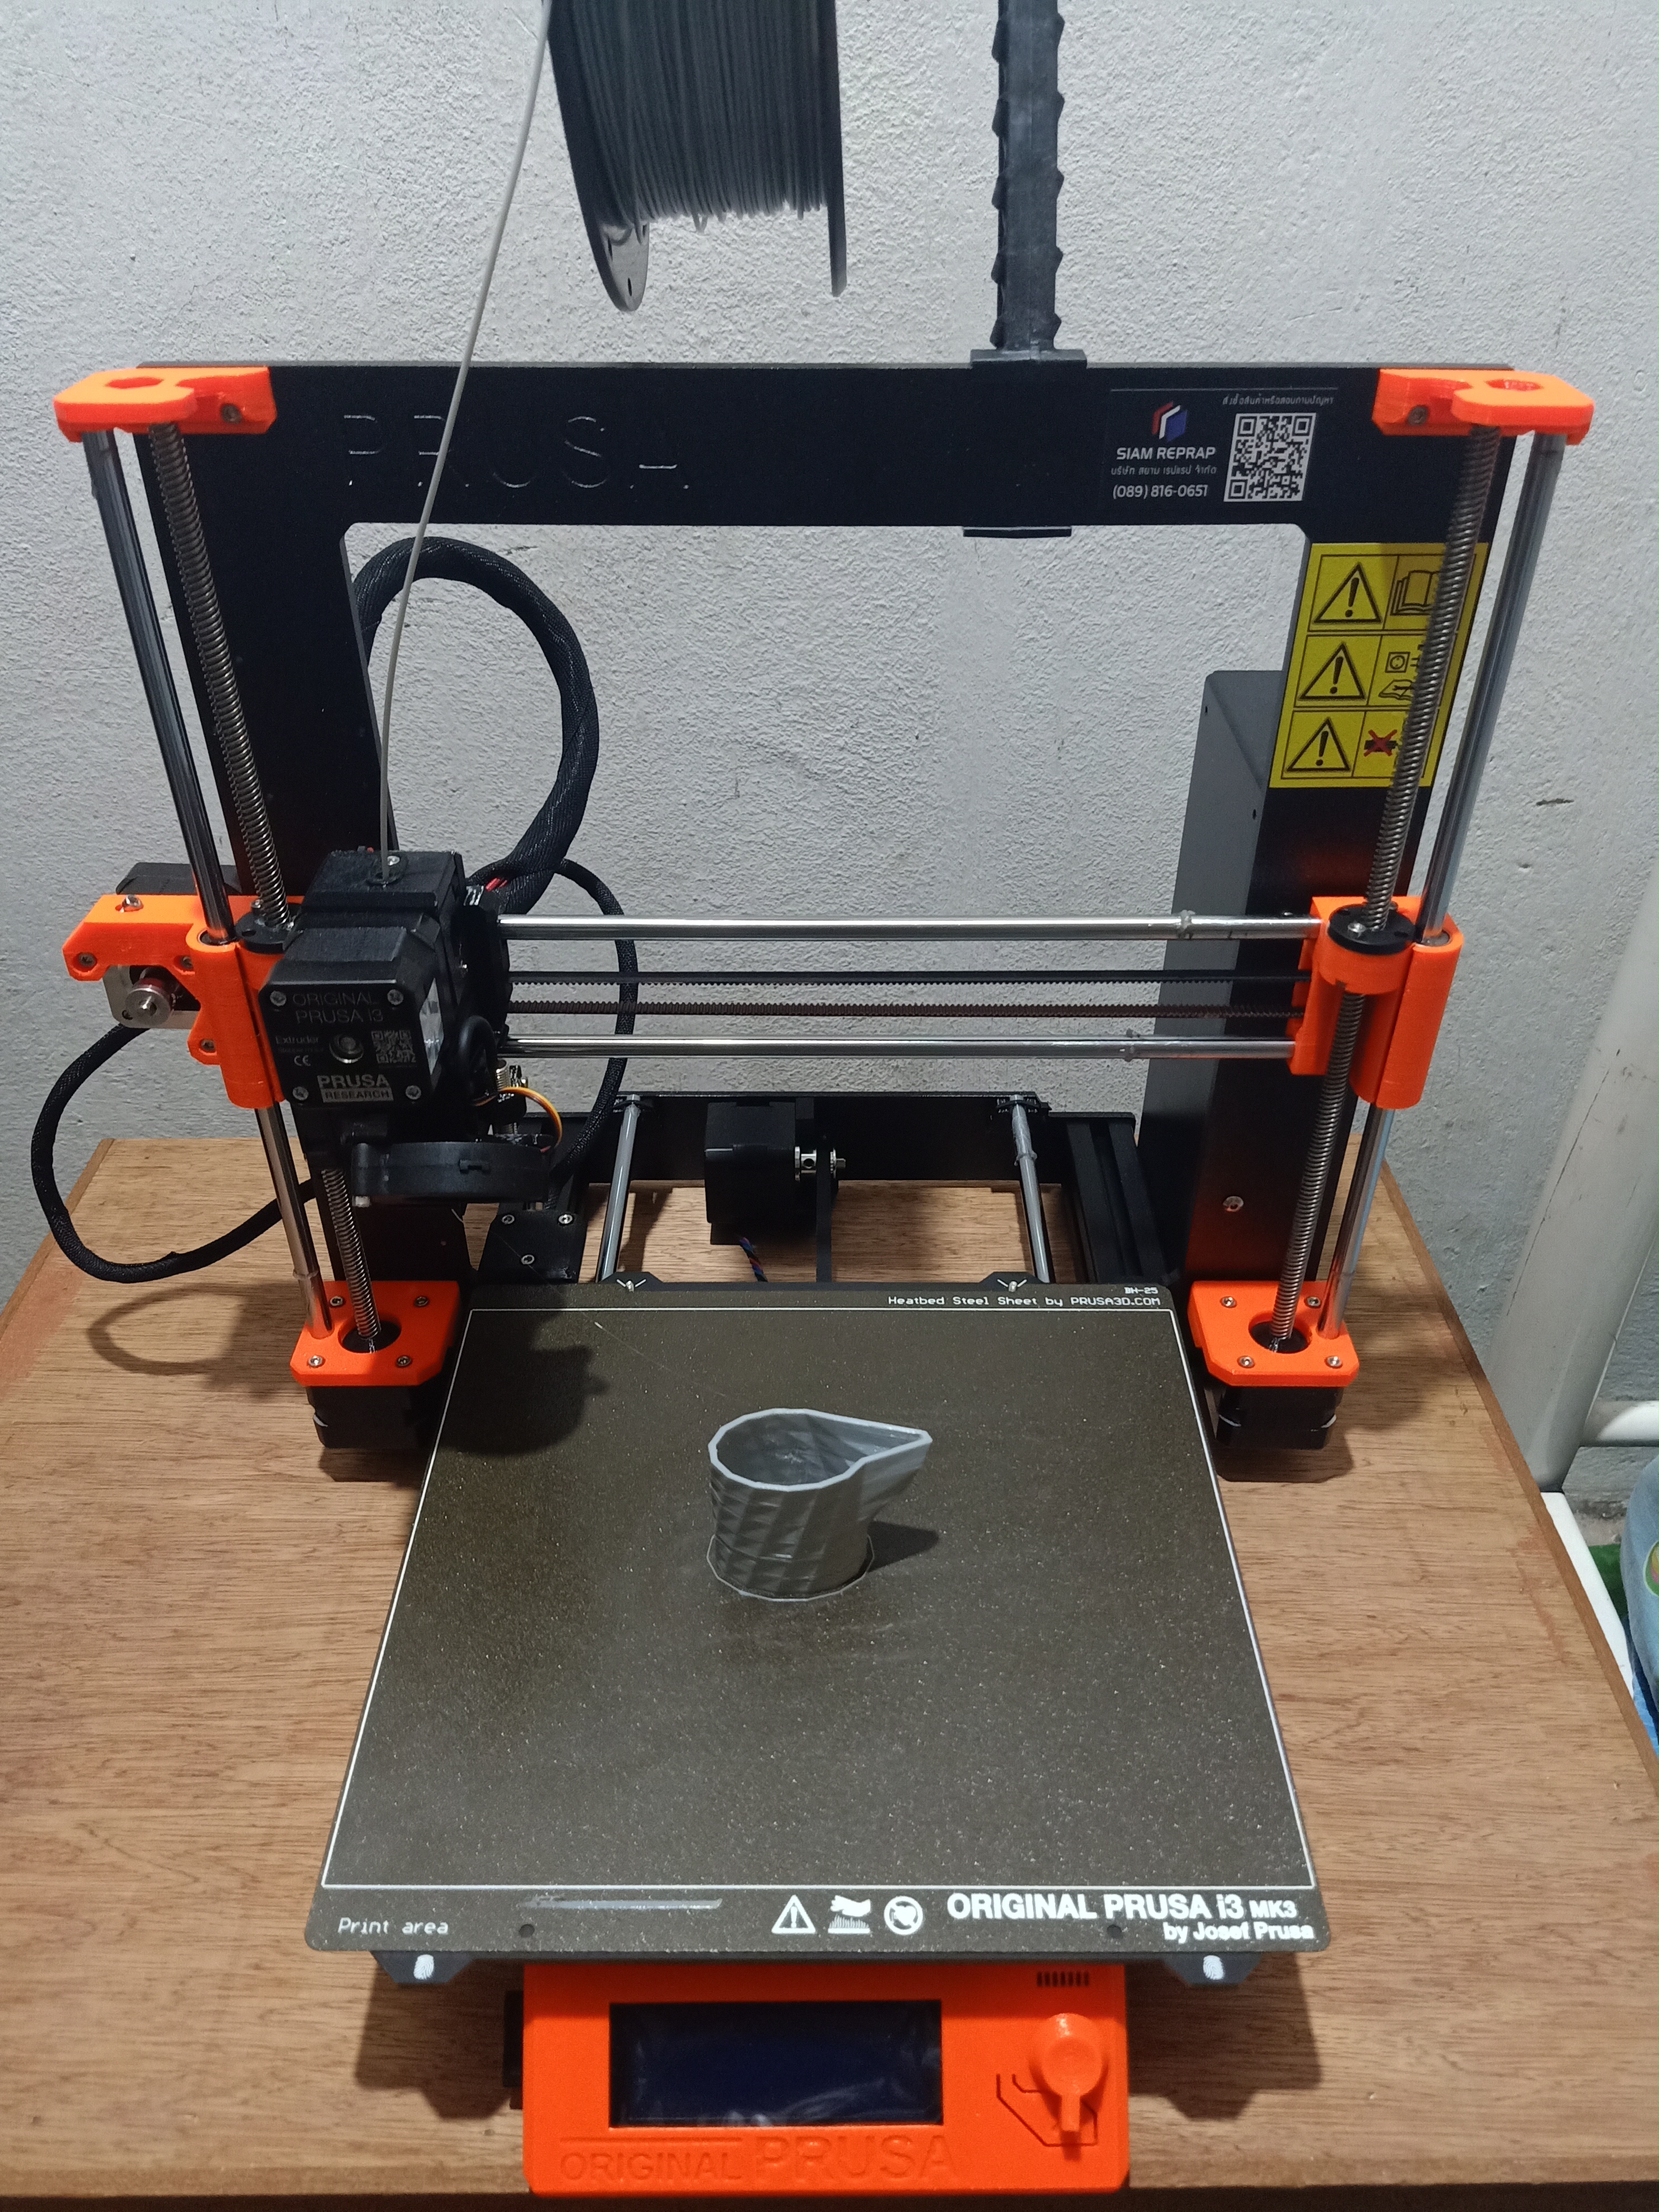 ผลิตชิ้นงานด้วยเครื่อง 3D Printer (Original Prusa i3 MK3S)